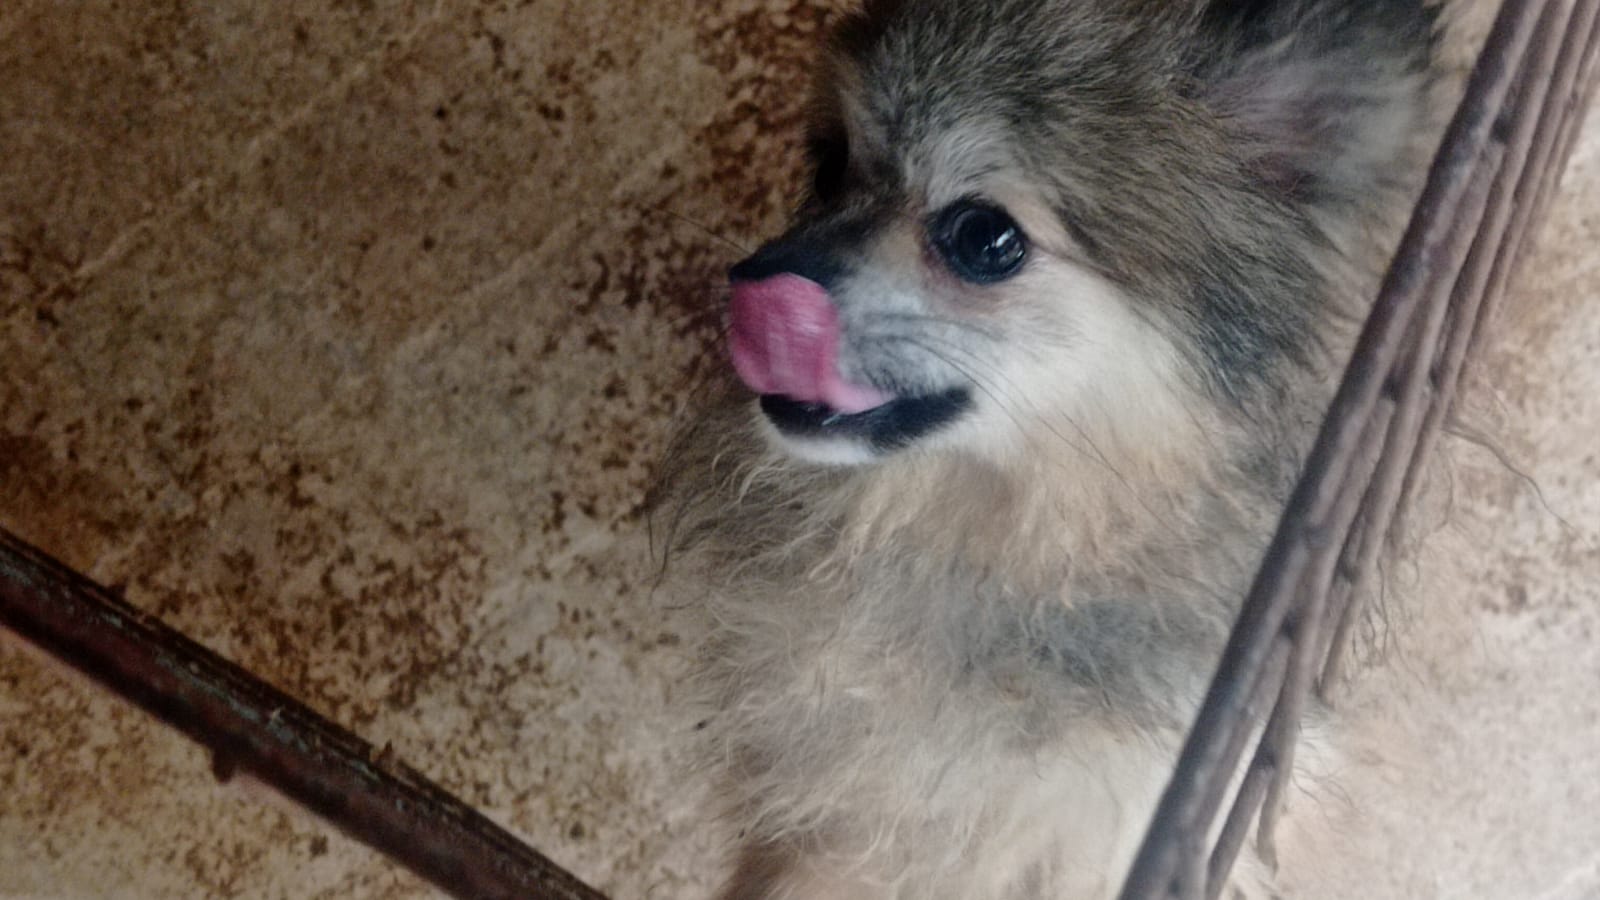 133 cães são encontrados em situação de maus-tratos em chácara de Limeira; homem foi preso